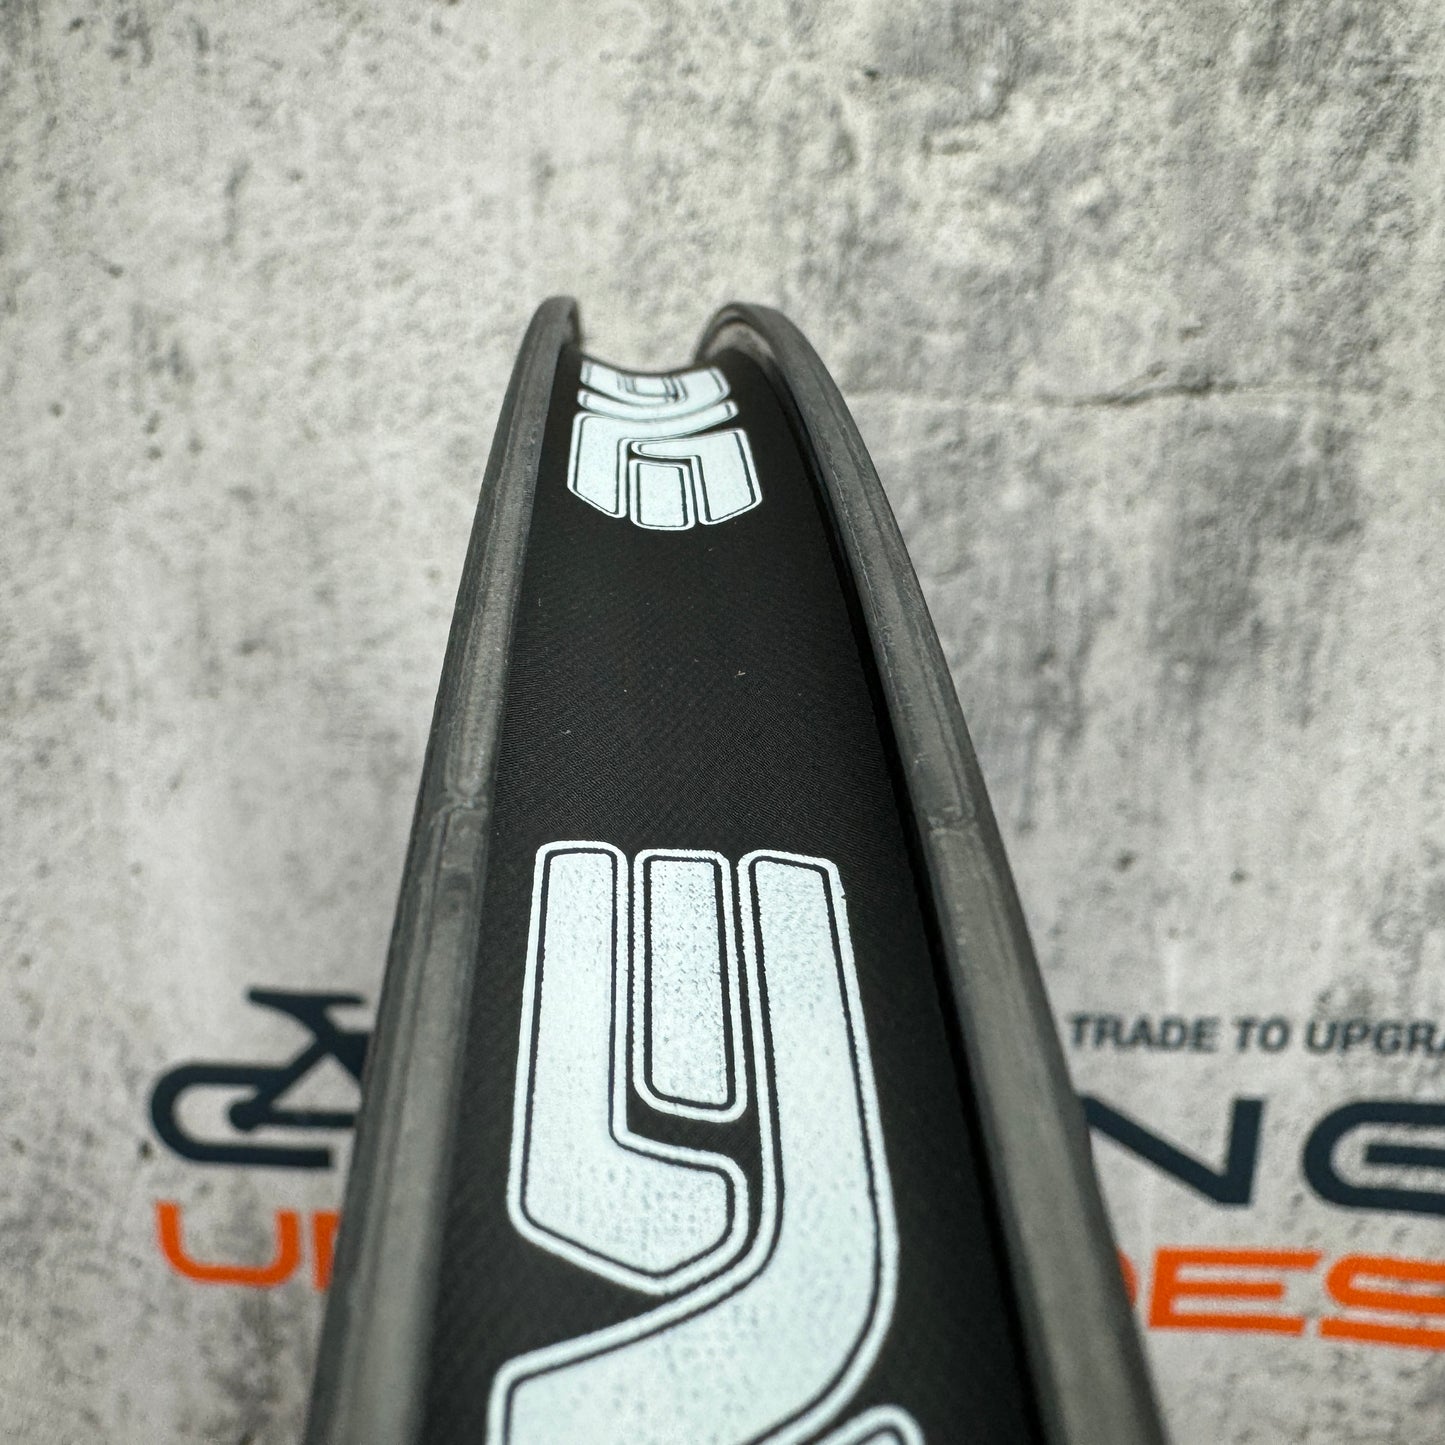 New! Enve SES 8.9 Carbon Clincher TT/Triathlon Wheelset 700c Rim Brake 1811g